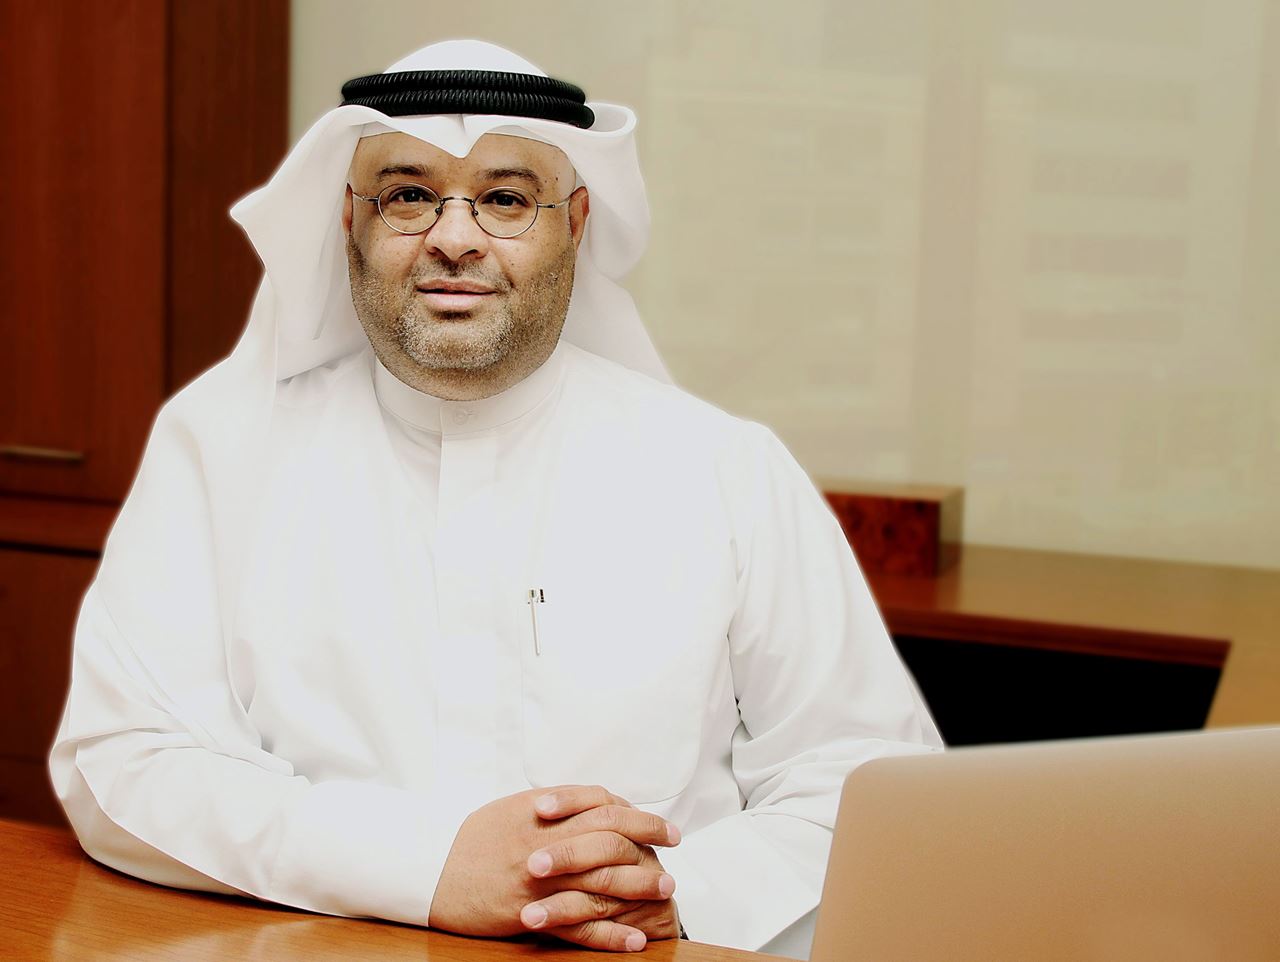 السيد سالم المليفي، الرئيس التنفيذي لقطاع التسويق والاستراتيجية في تواصل تيليكوم